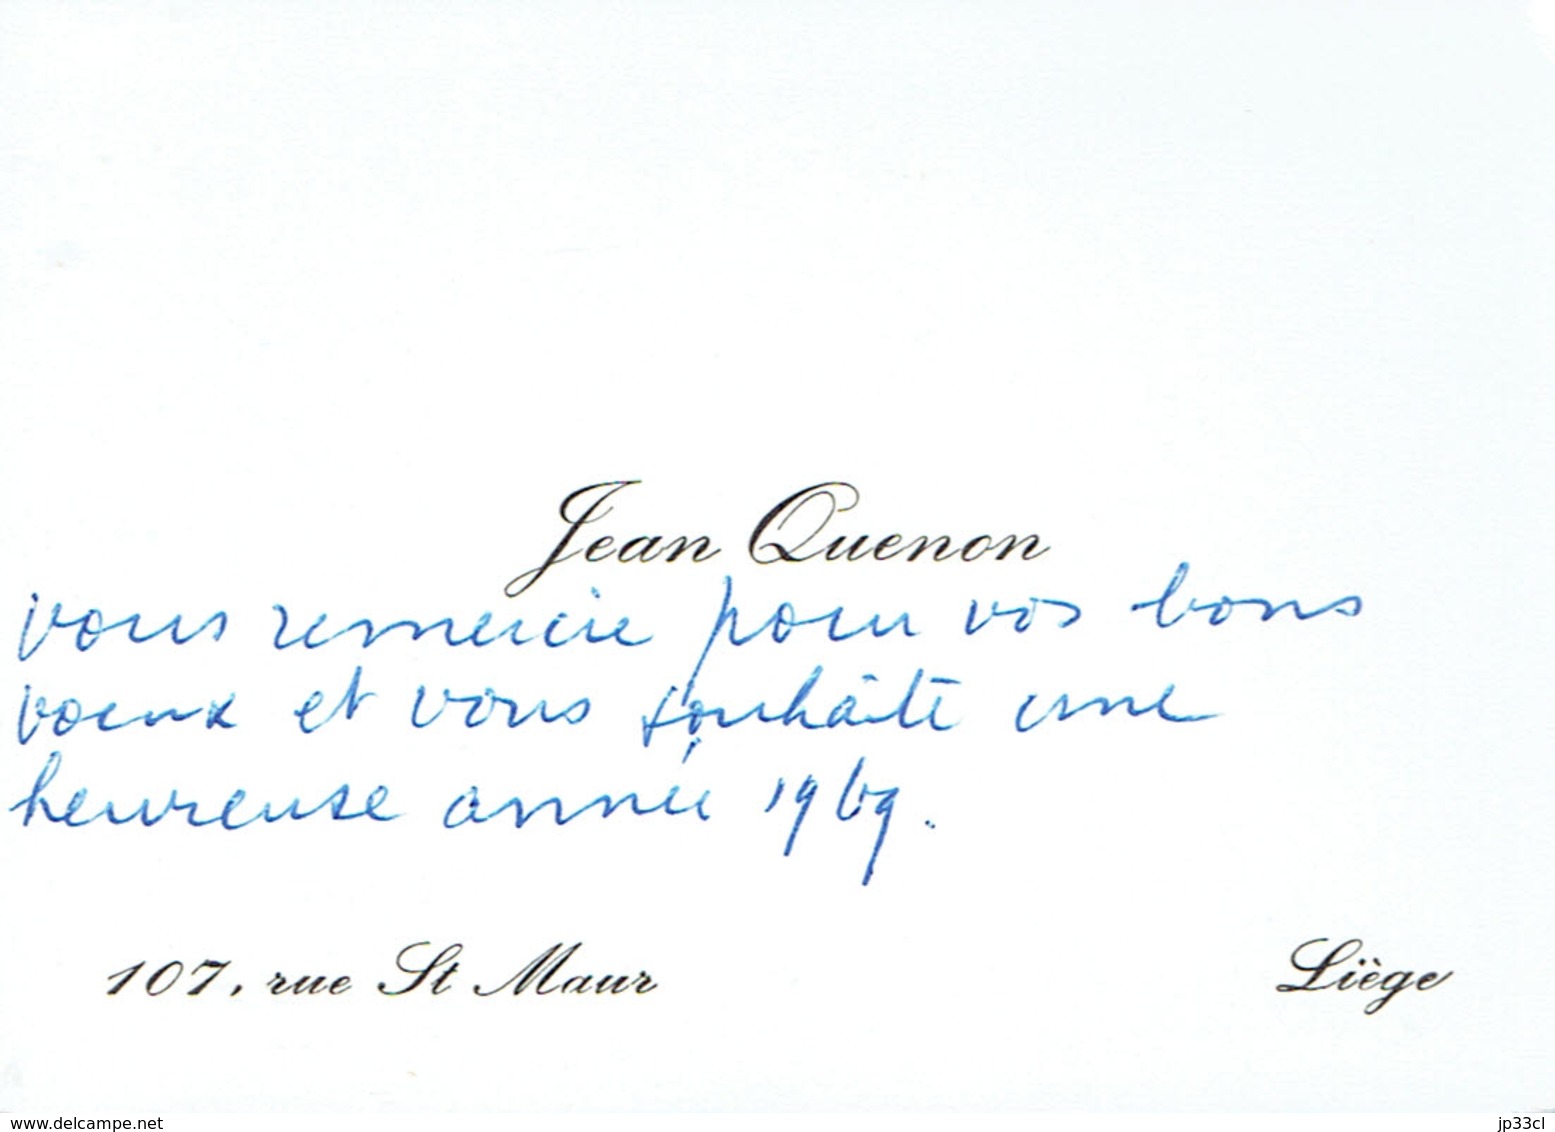 Ancienne Carte De Visite Autographe De Jean Quenon, Professeur à L'ULG, Rue St Maur, Liège (vers 1968) - Tarjetas De Visita